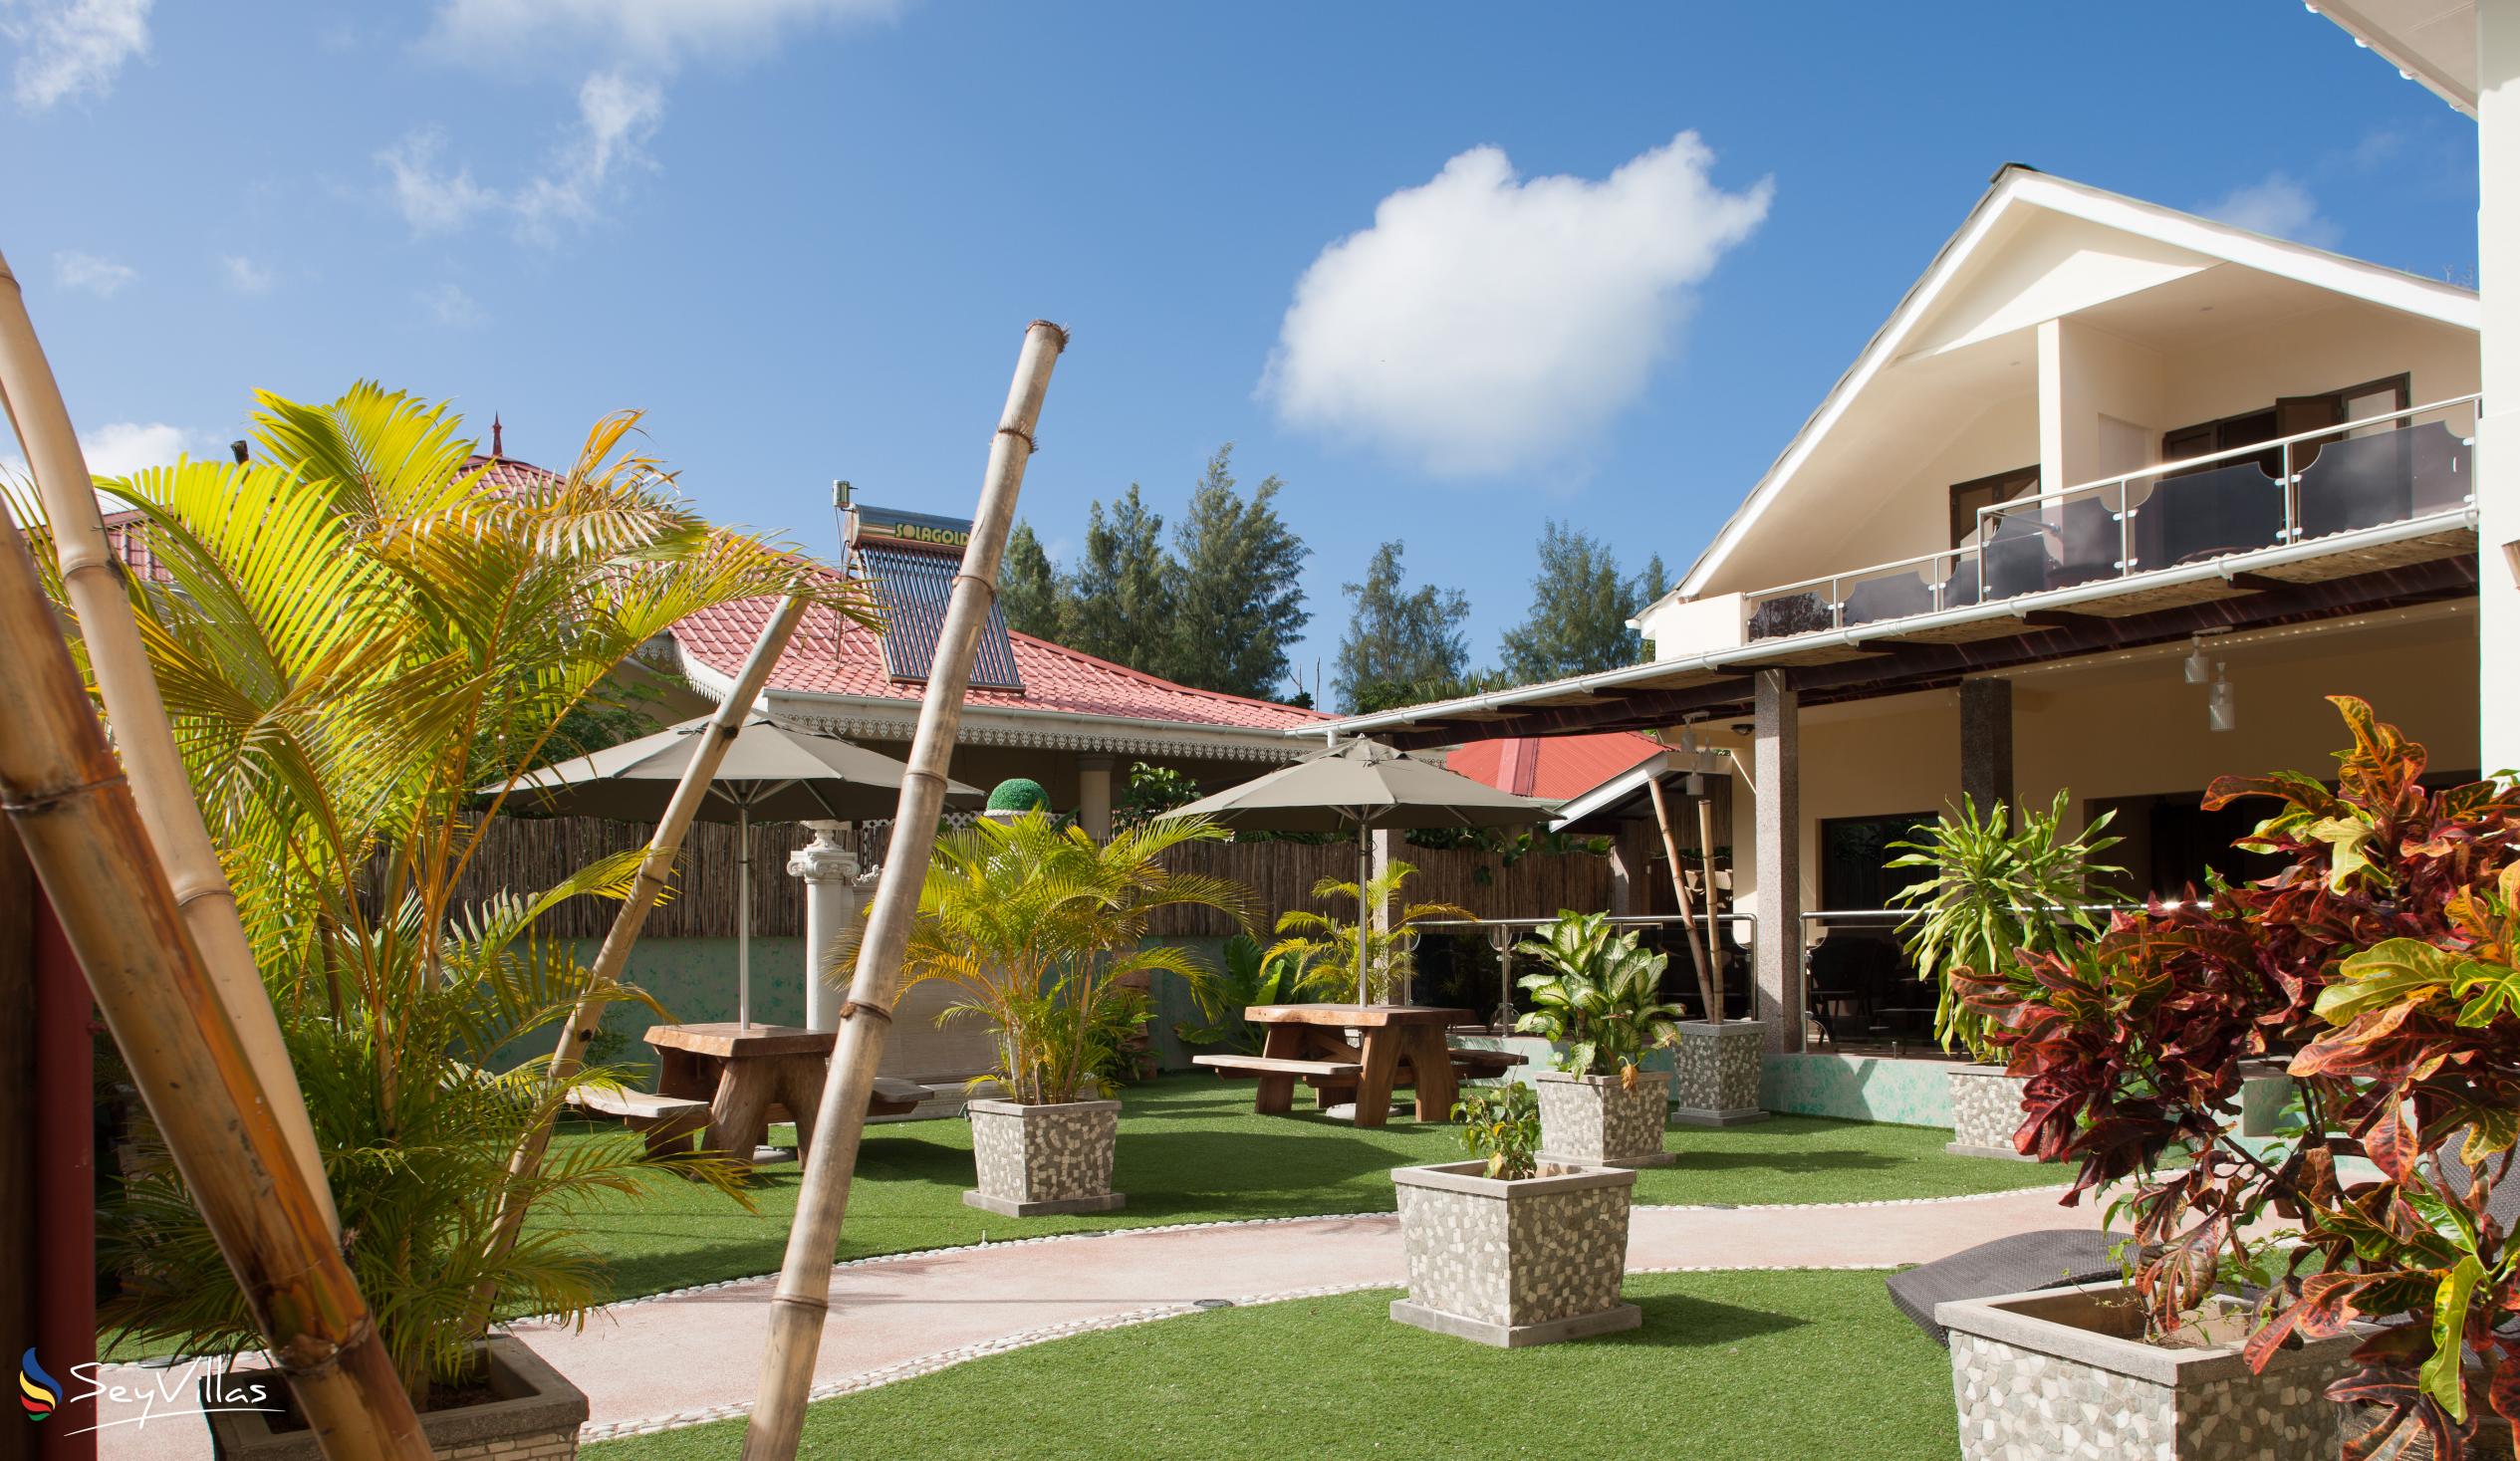 Foto 6: Chez Bea Villa - Aussenbereich - Praslin (Seychellen)